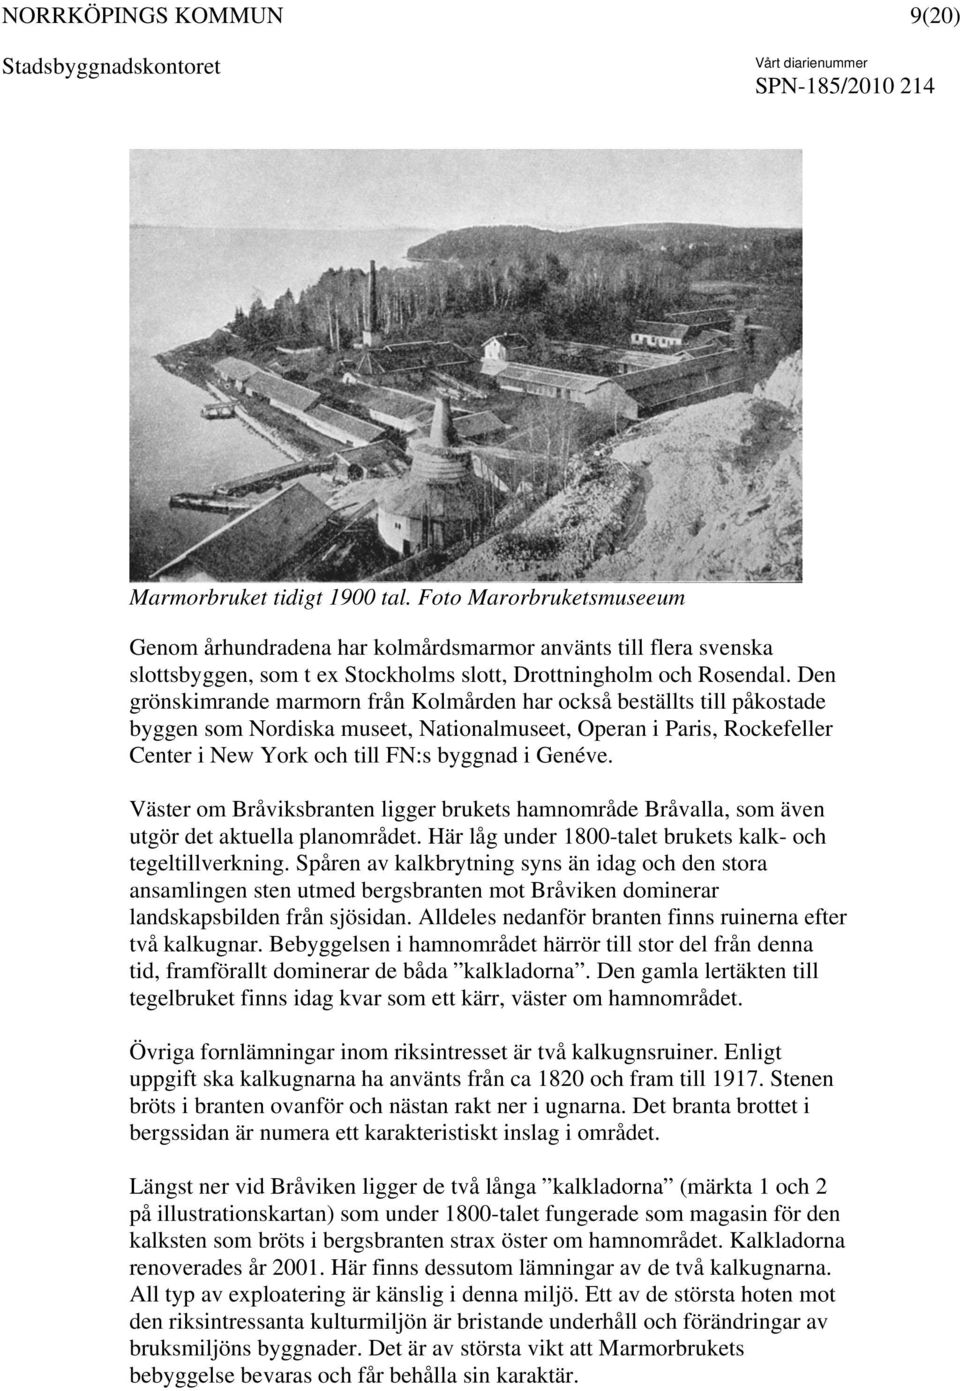 Väster om Bråviksbranten ligger brukets hamnområde Bråvalla, som även utgör det aktuella planområdet. Här låg under 1800-talet brukets kalk- och tegeltillverkning.